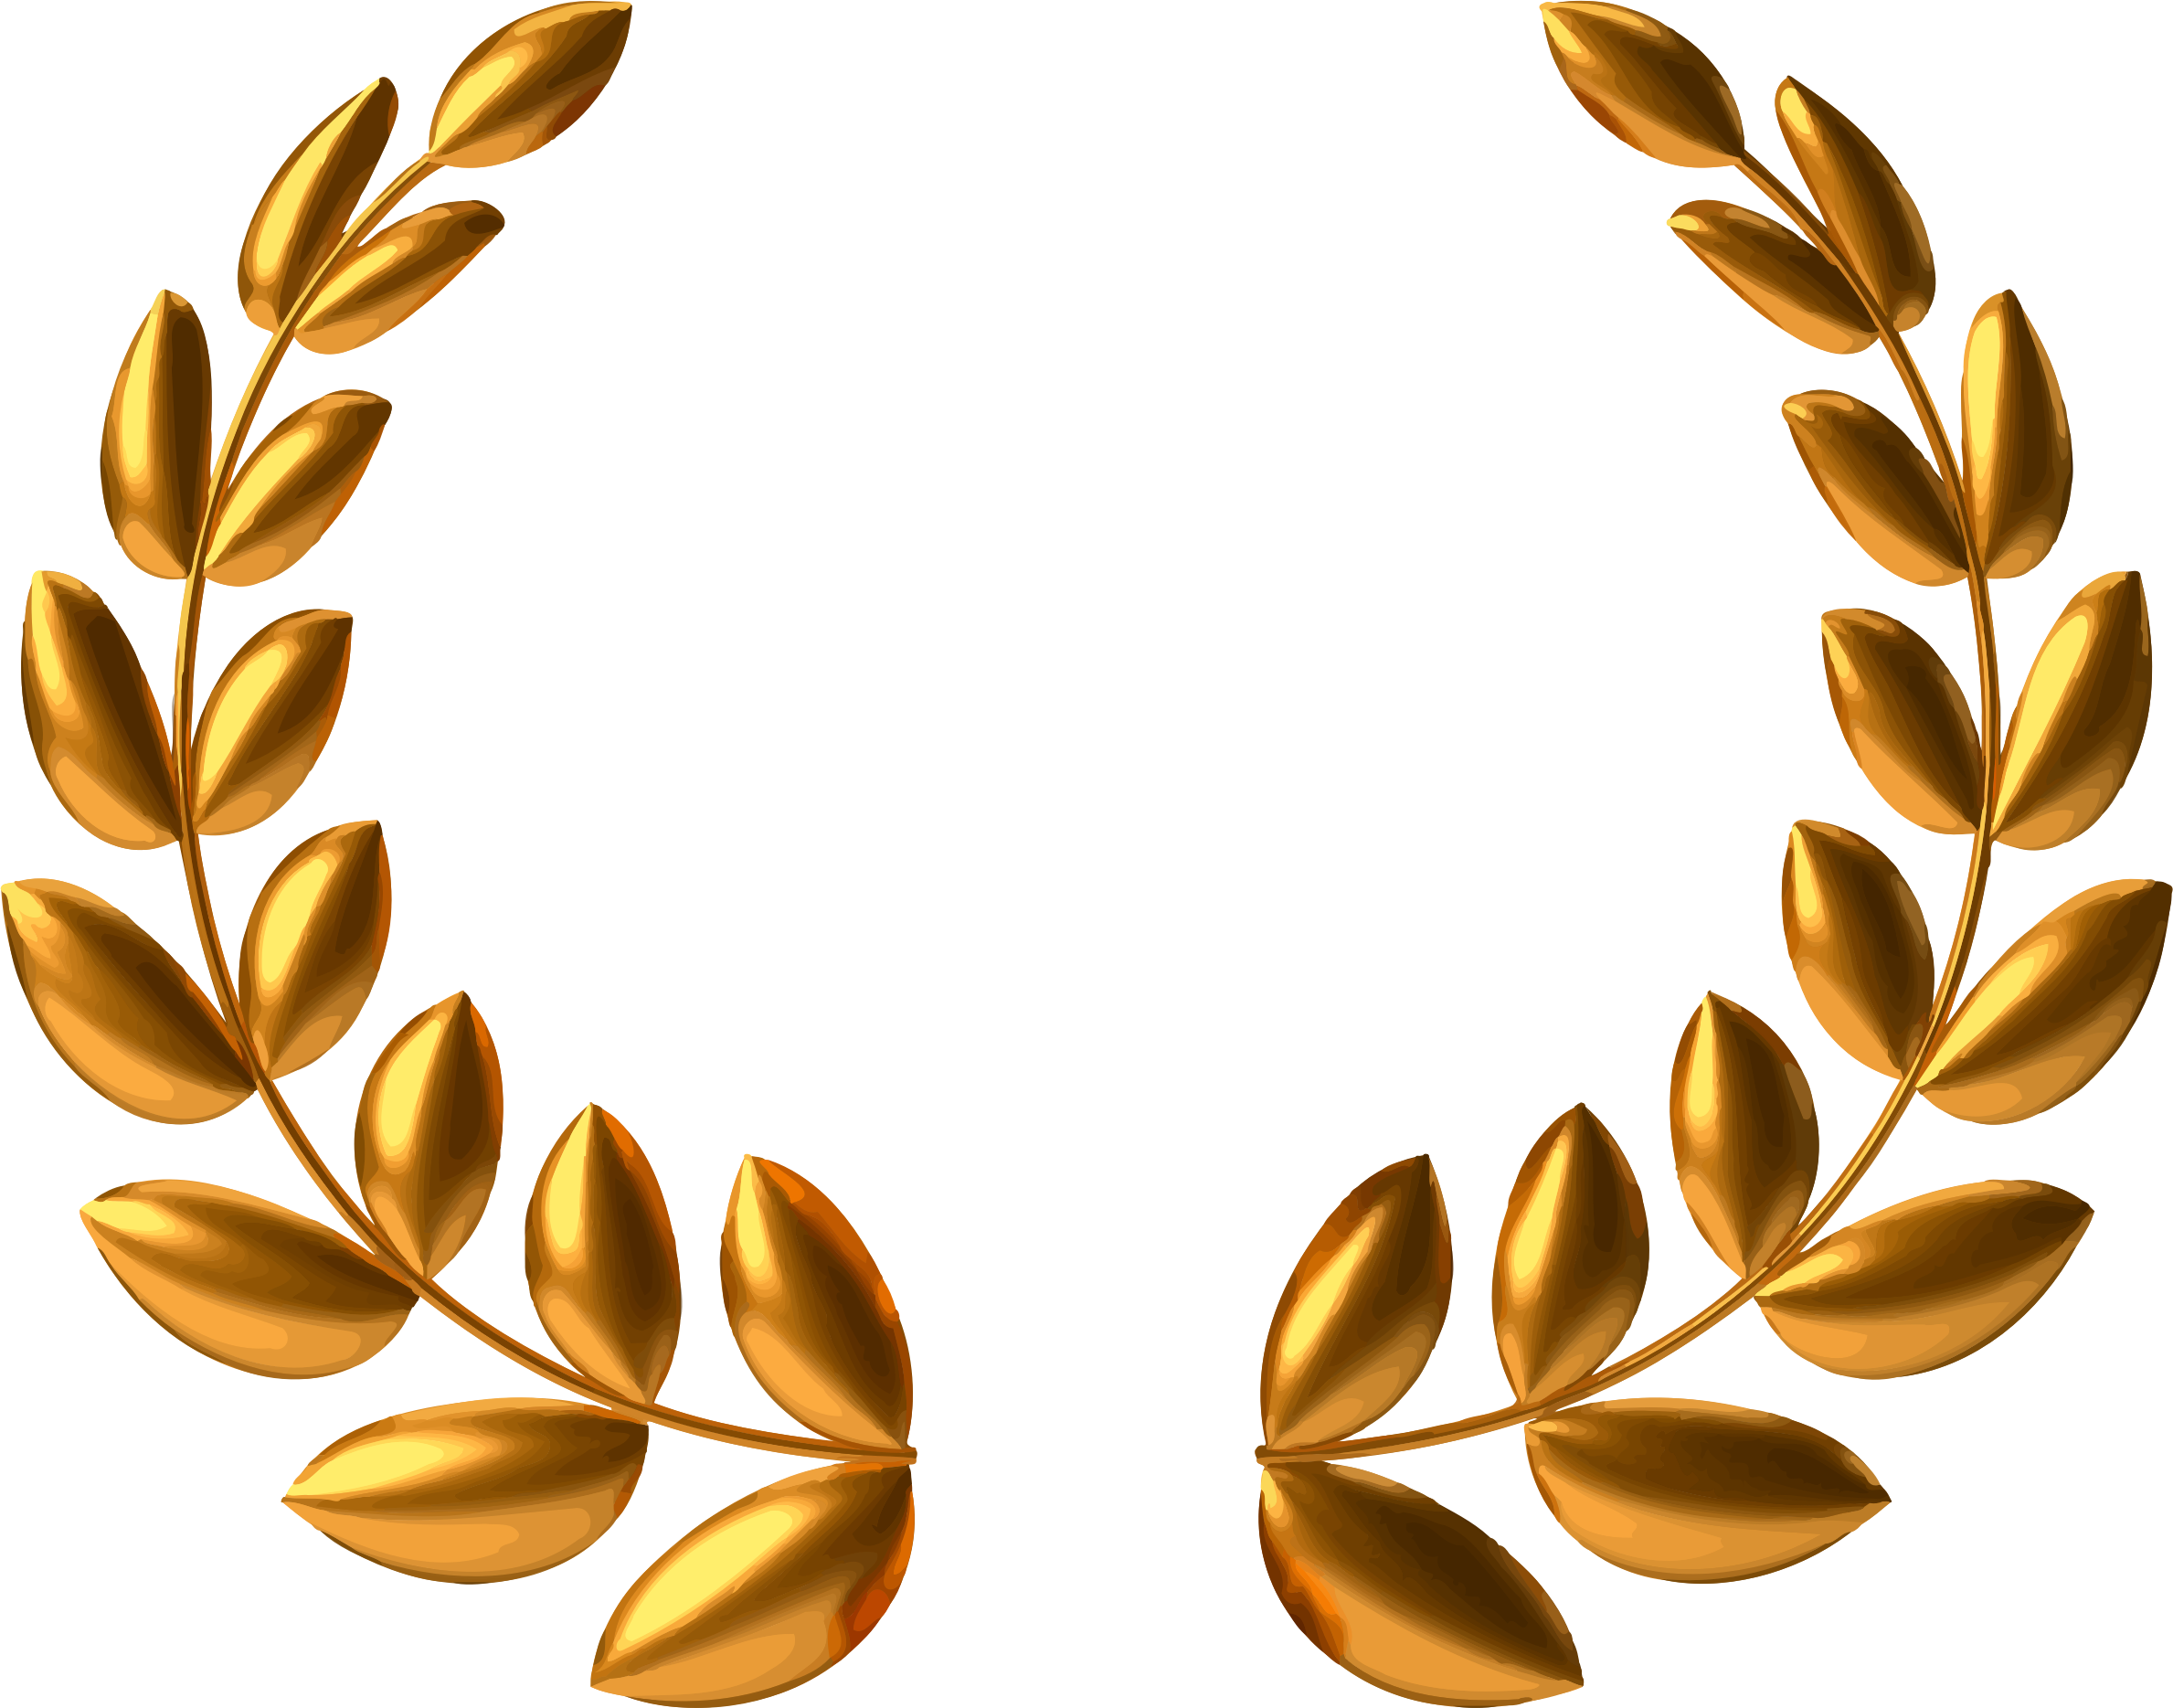 Bronze Wreath - Gold Wreath Vector Png (2378x1869)